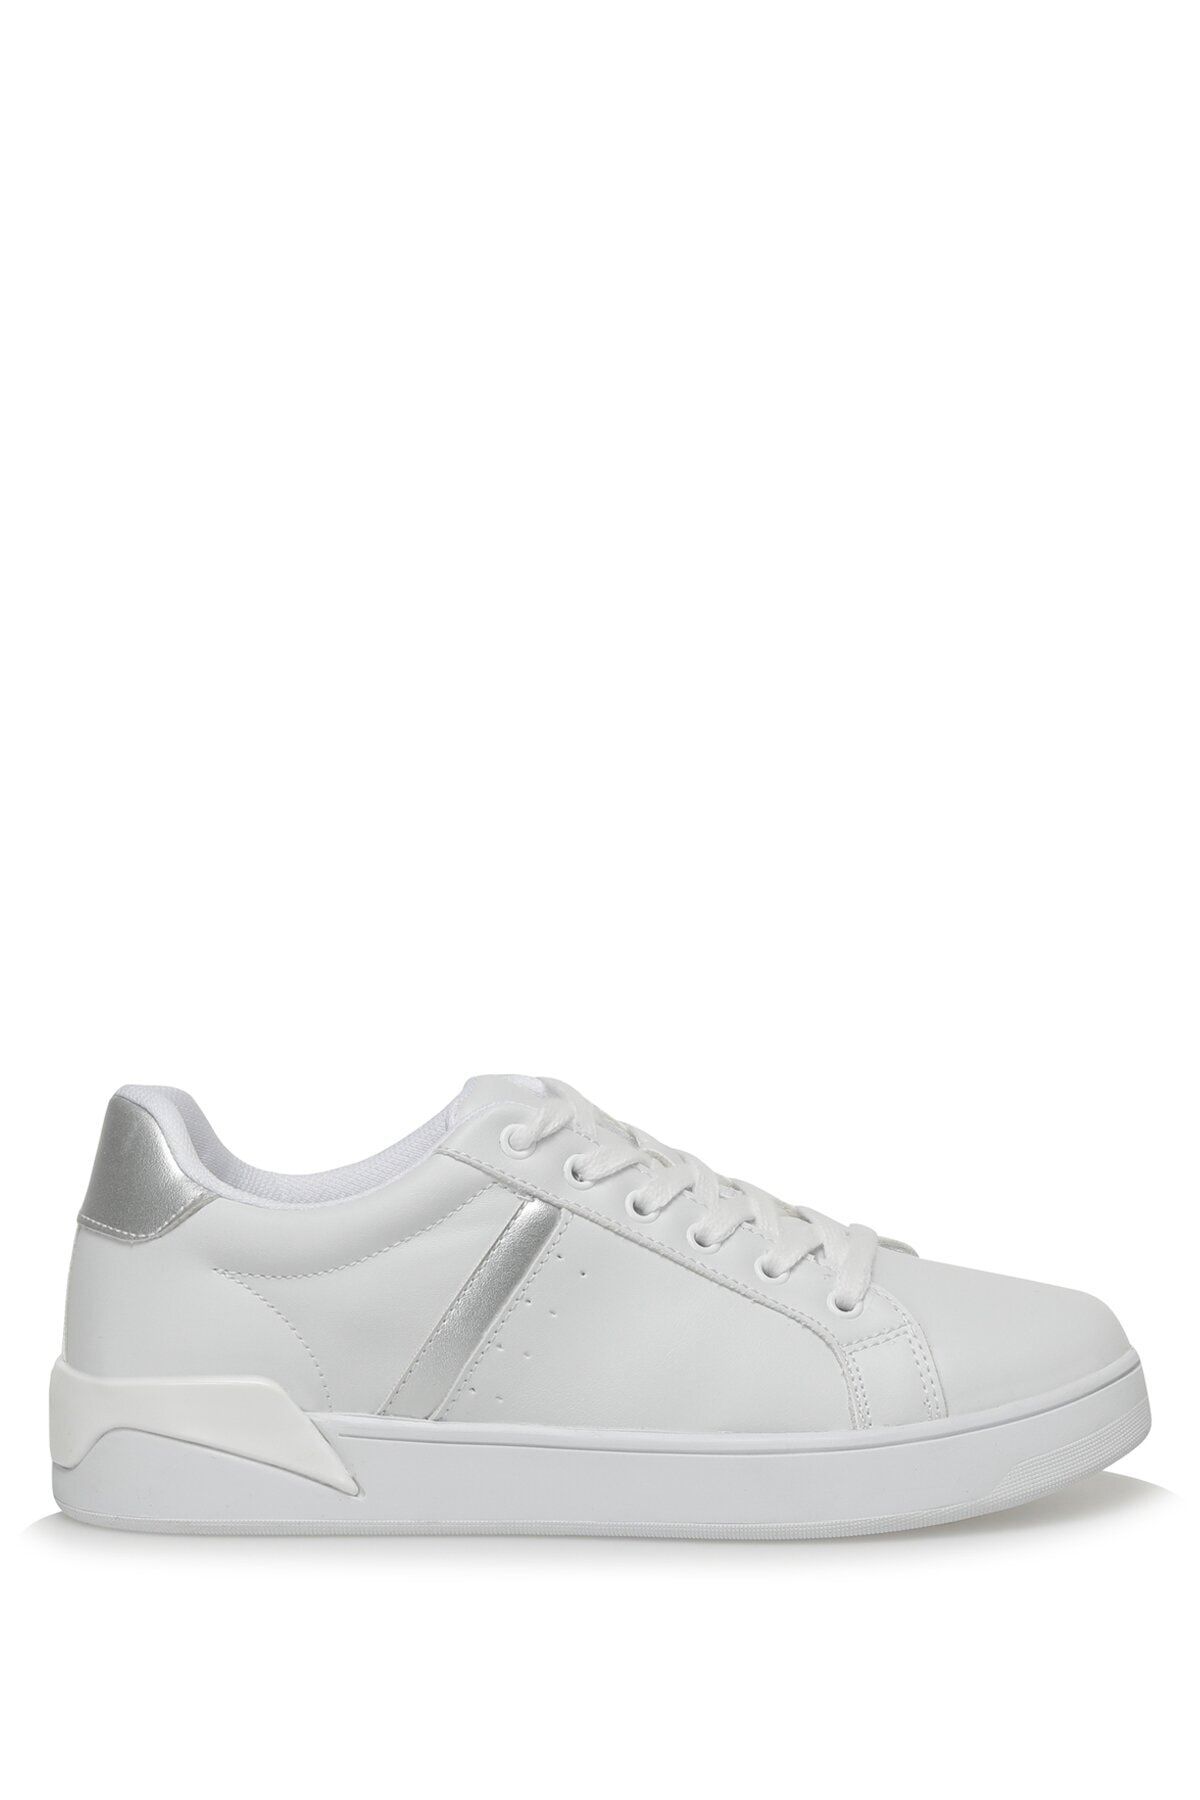 Polaris 321547.z 3fx Beyaz Kadın Sneaker